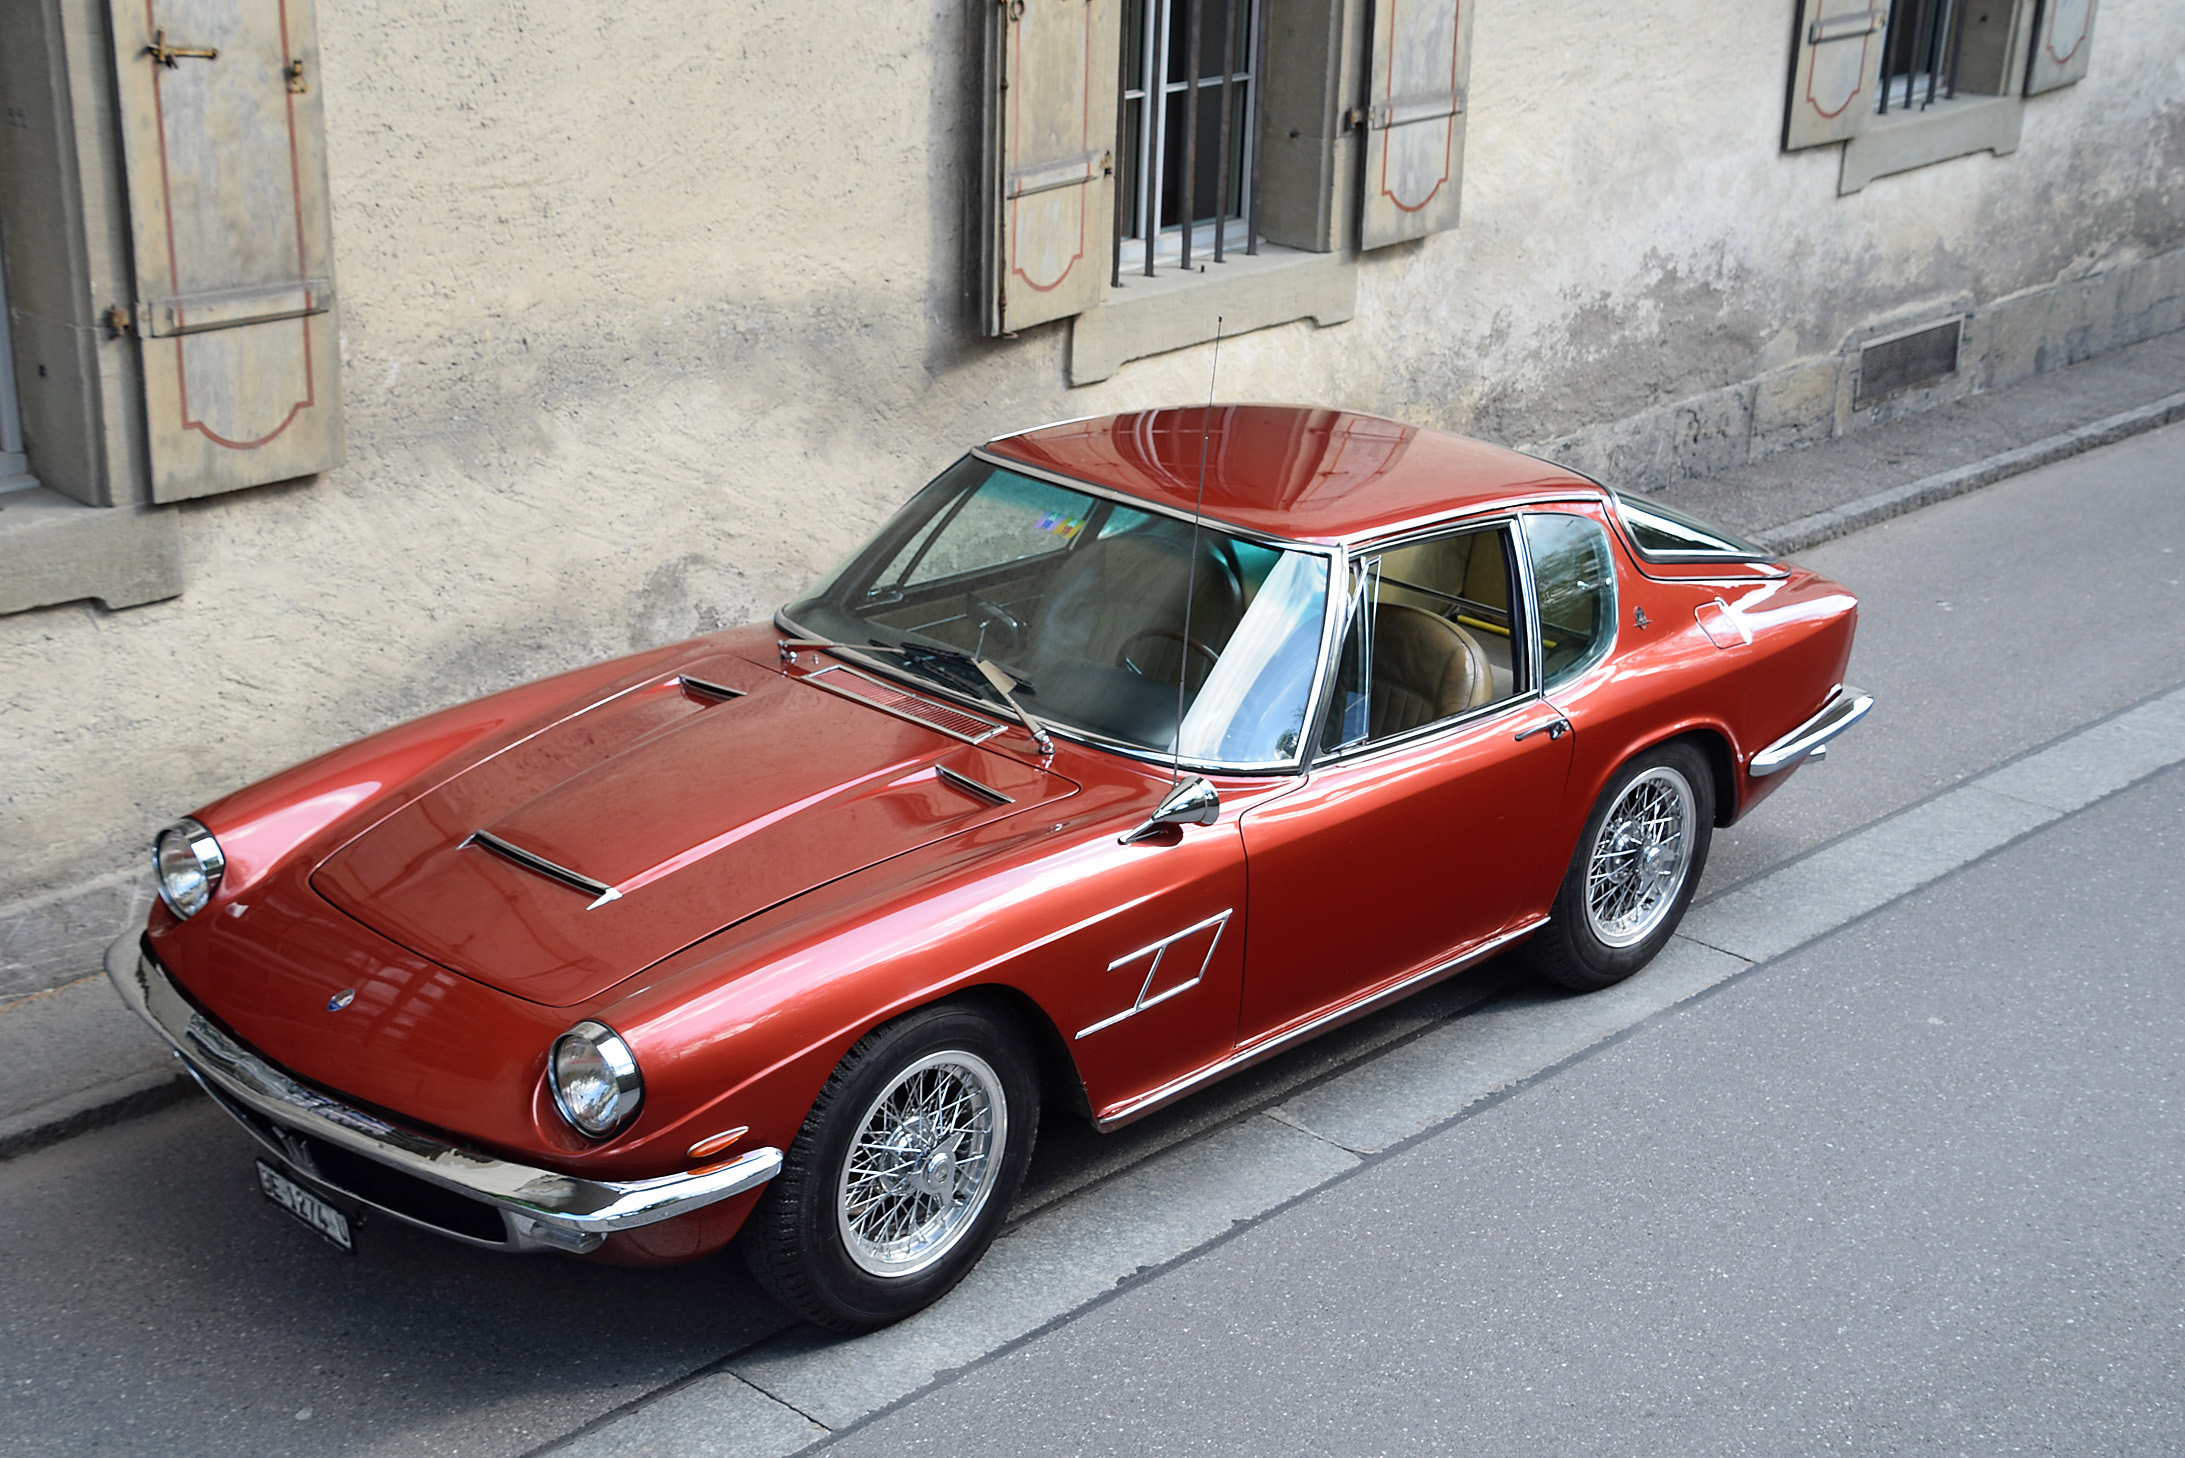 1967 Maserati Mistral - 4000 1964/67 | Classic Driver Market